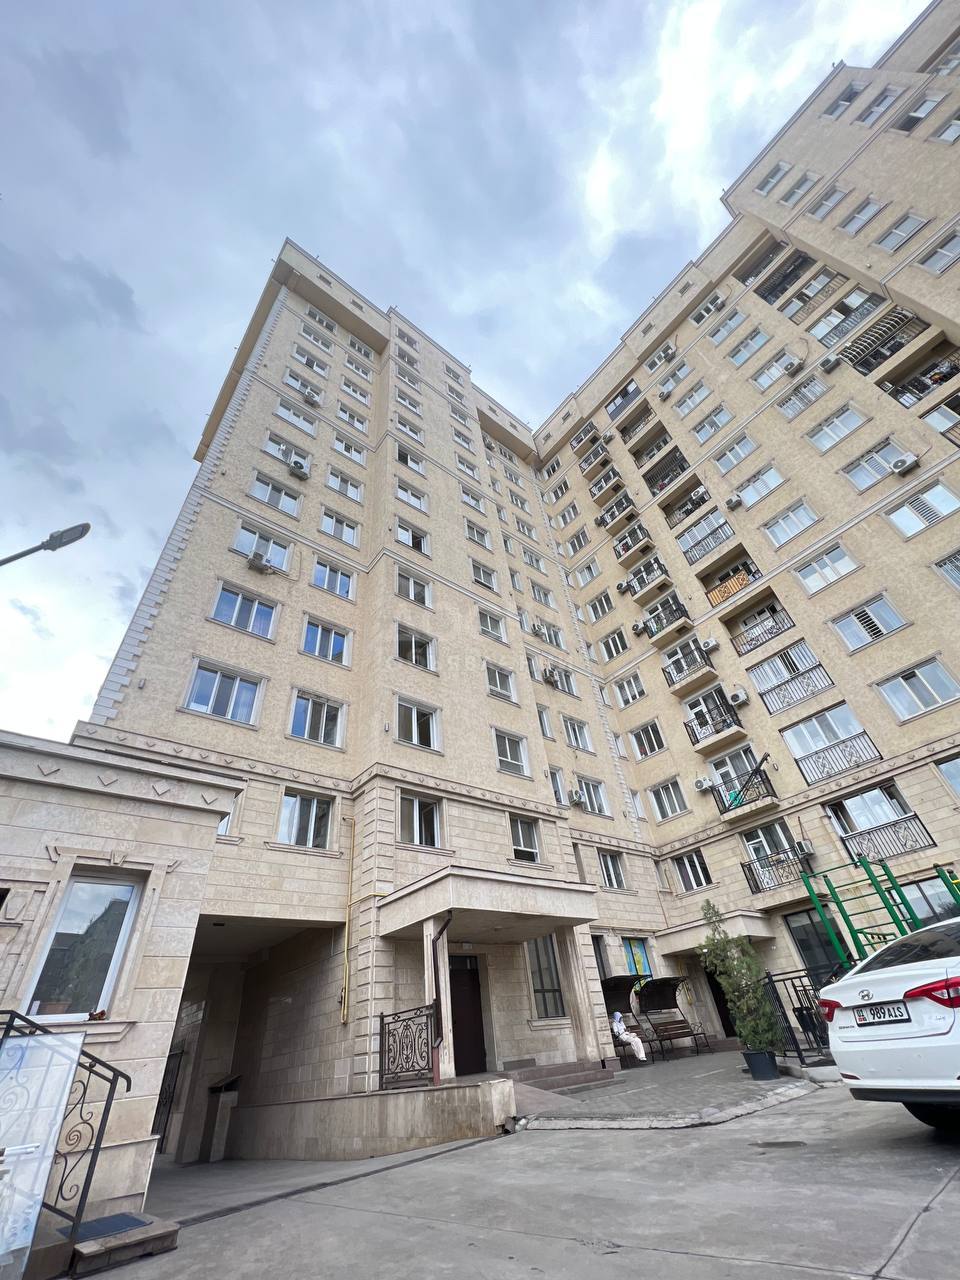 Продаю 2-комнатную квартиру, 36кв. м., этаж - 6/12,  Бишкек, Ипподром, Л. Толстого 126 (10/1).